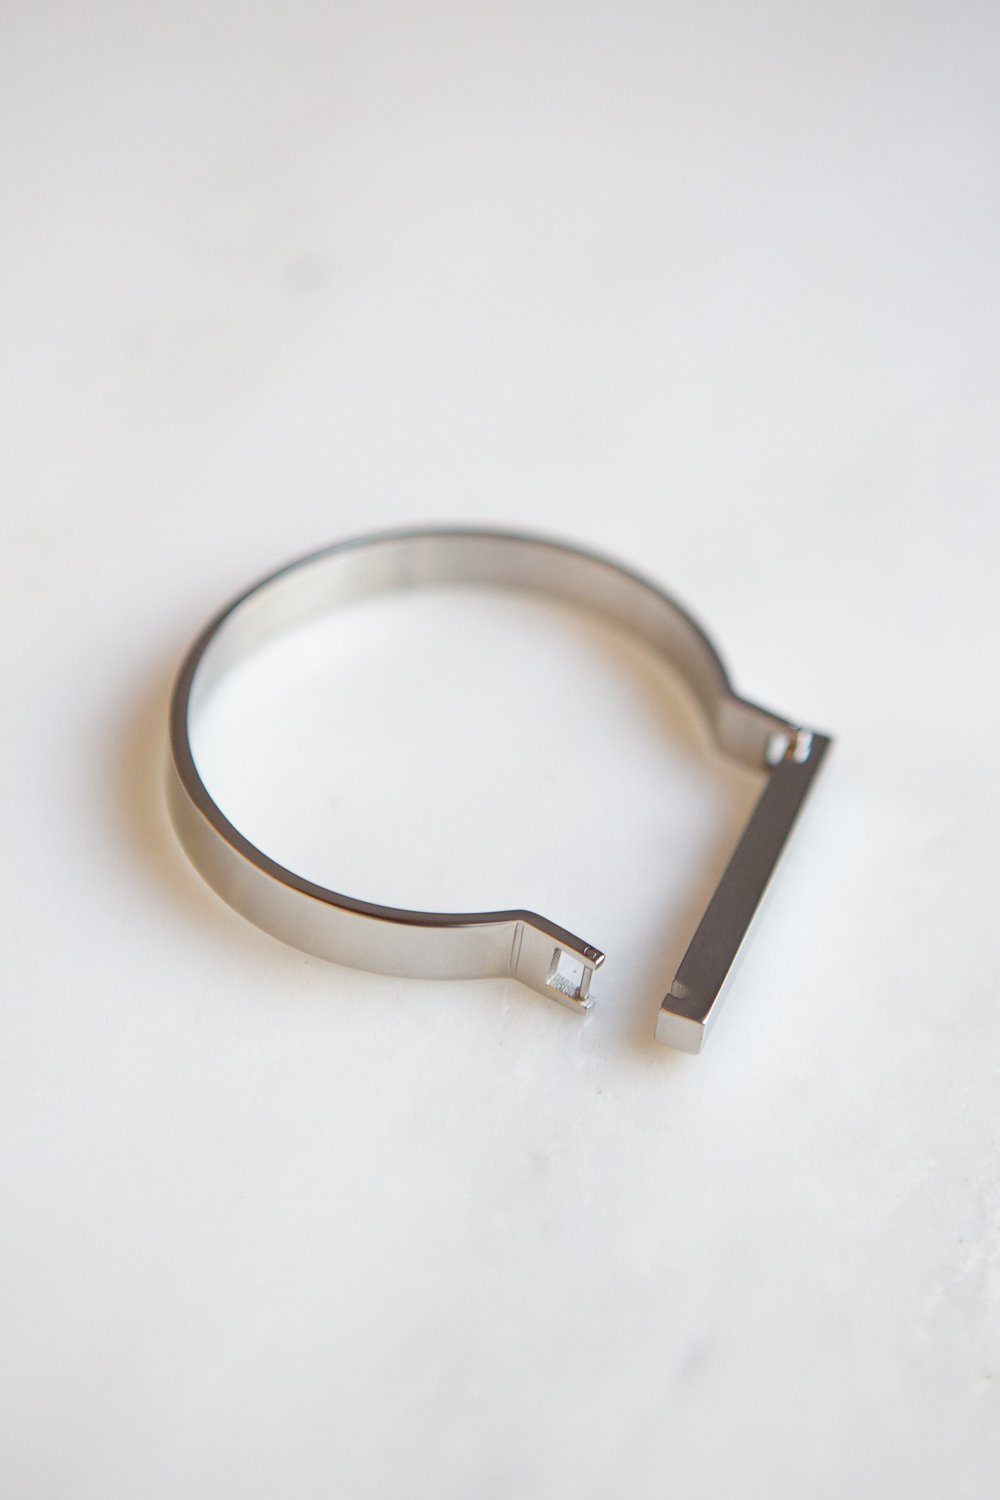 Minimalist Silver Horseshoe Bar Bracelet - Wynter Bloom